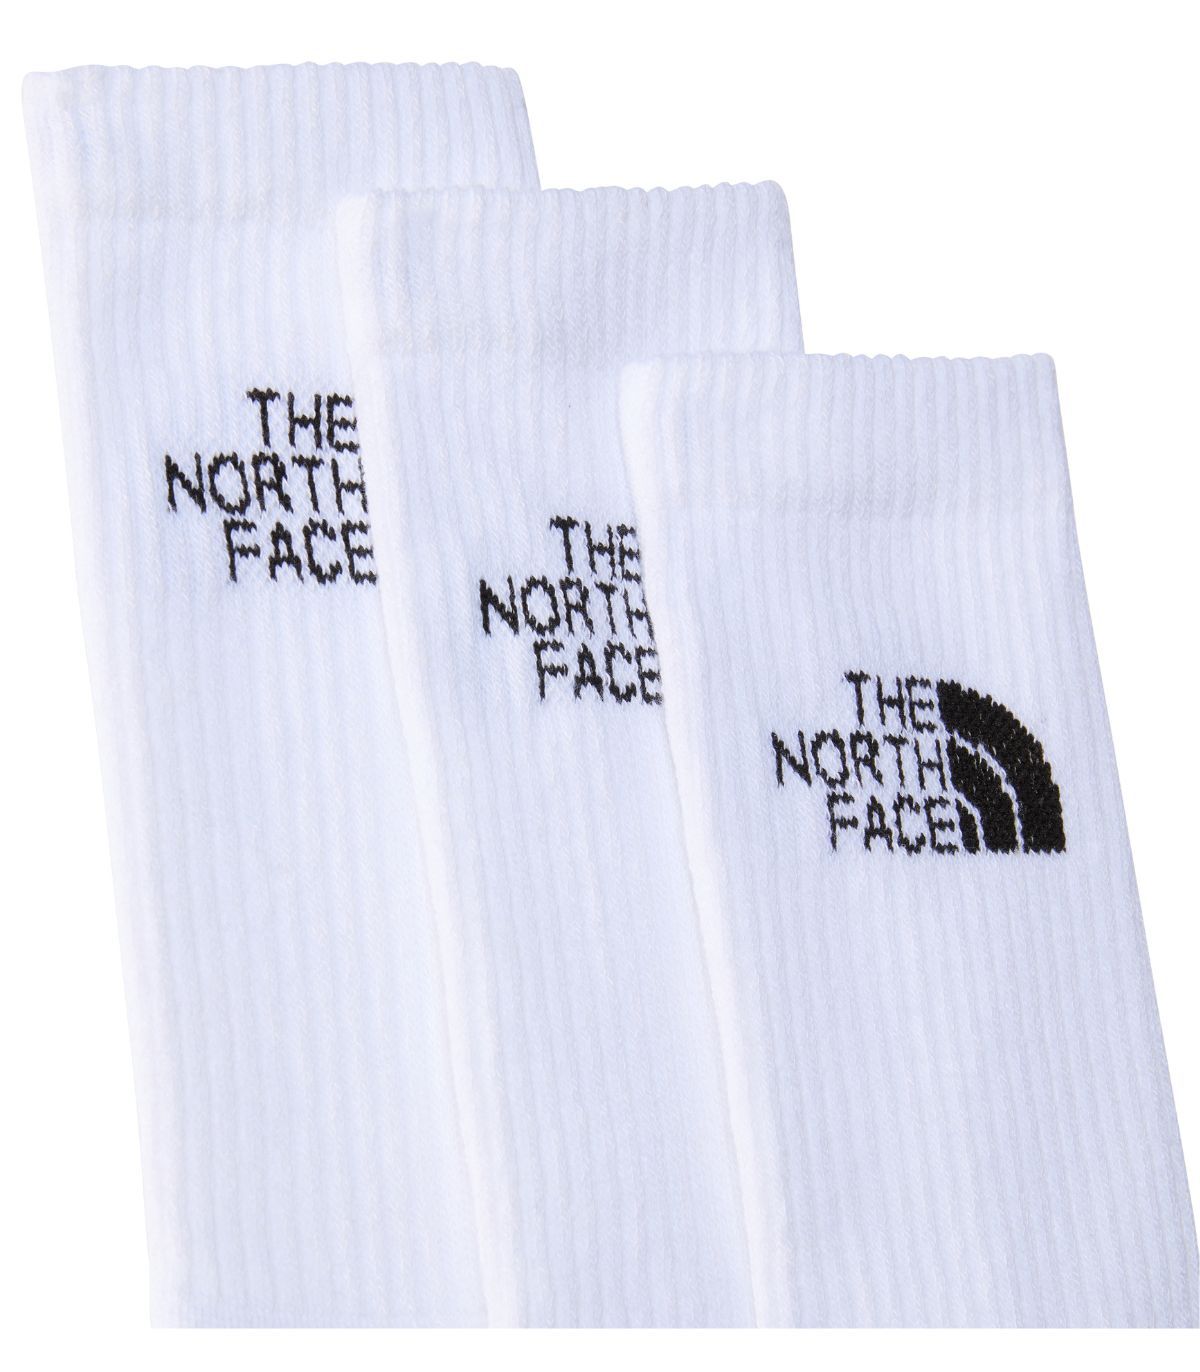 Calcetines The North Face Multi Sport Cush Crew Sock 3P TNF White. Oferta y  comprar